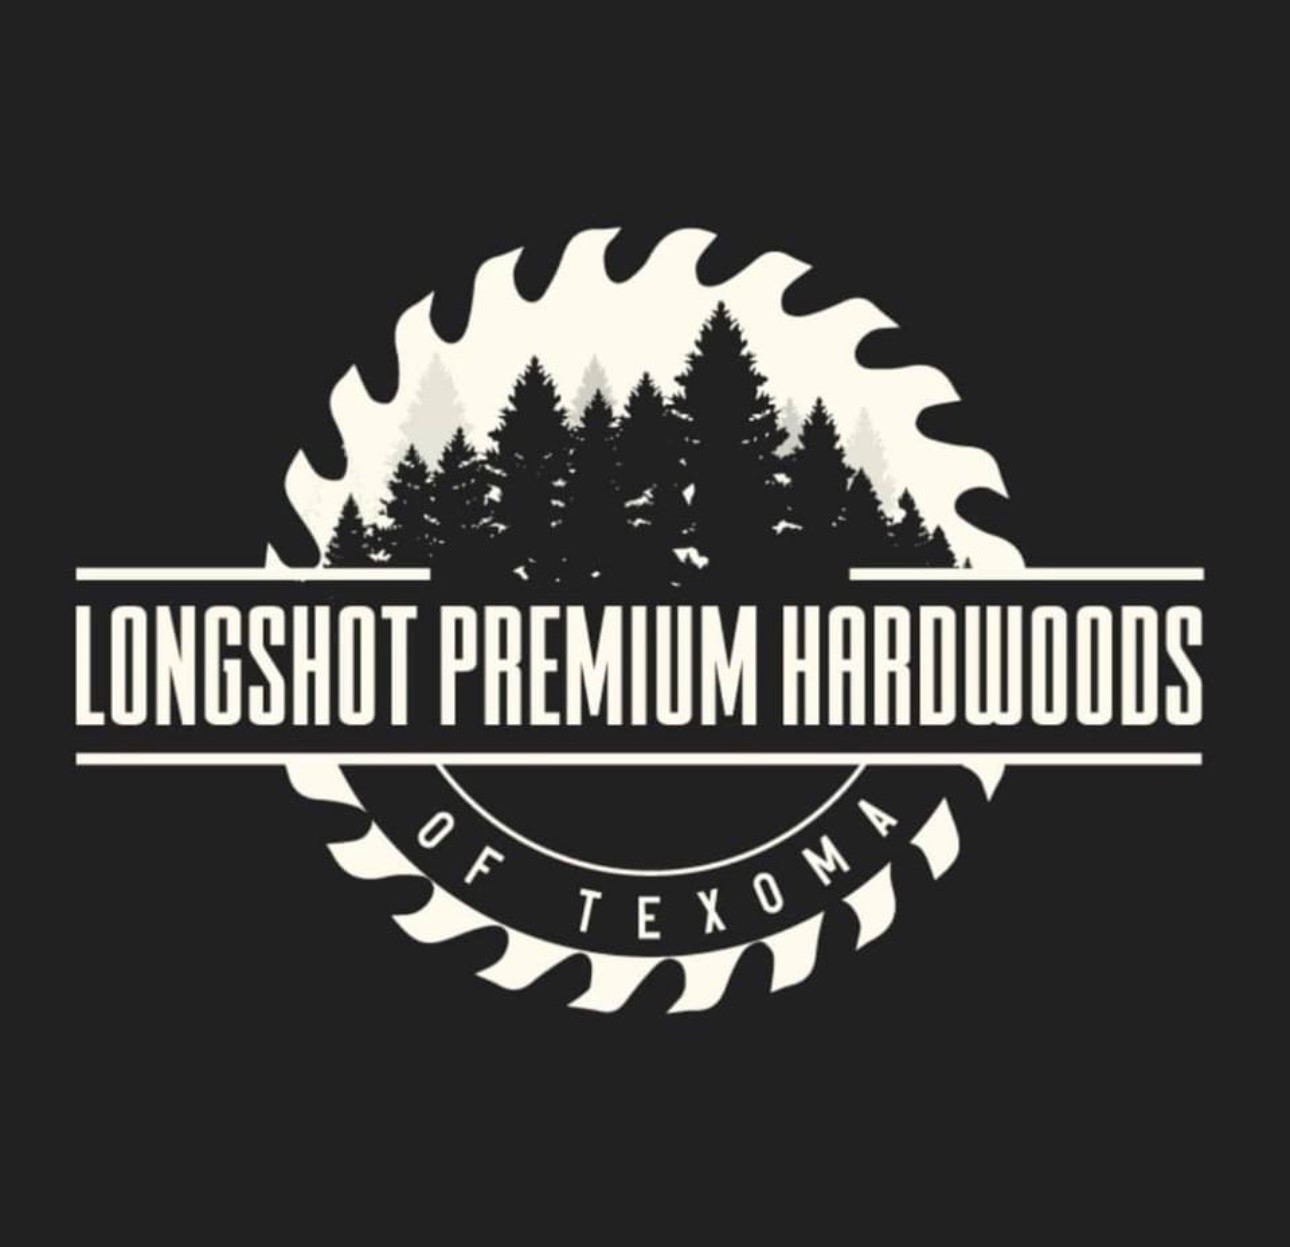 Longshot Premium Hardwoods of Texoma